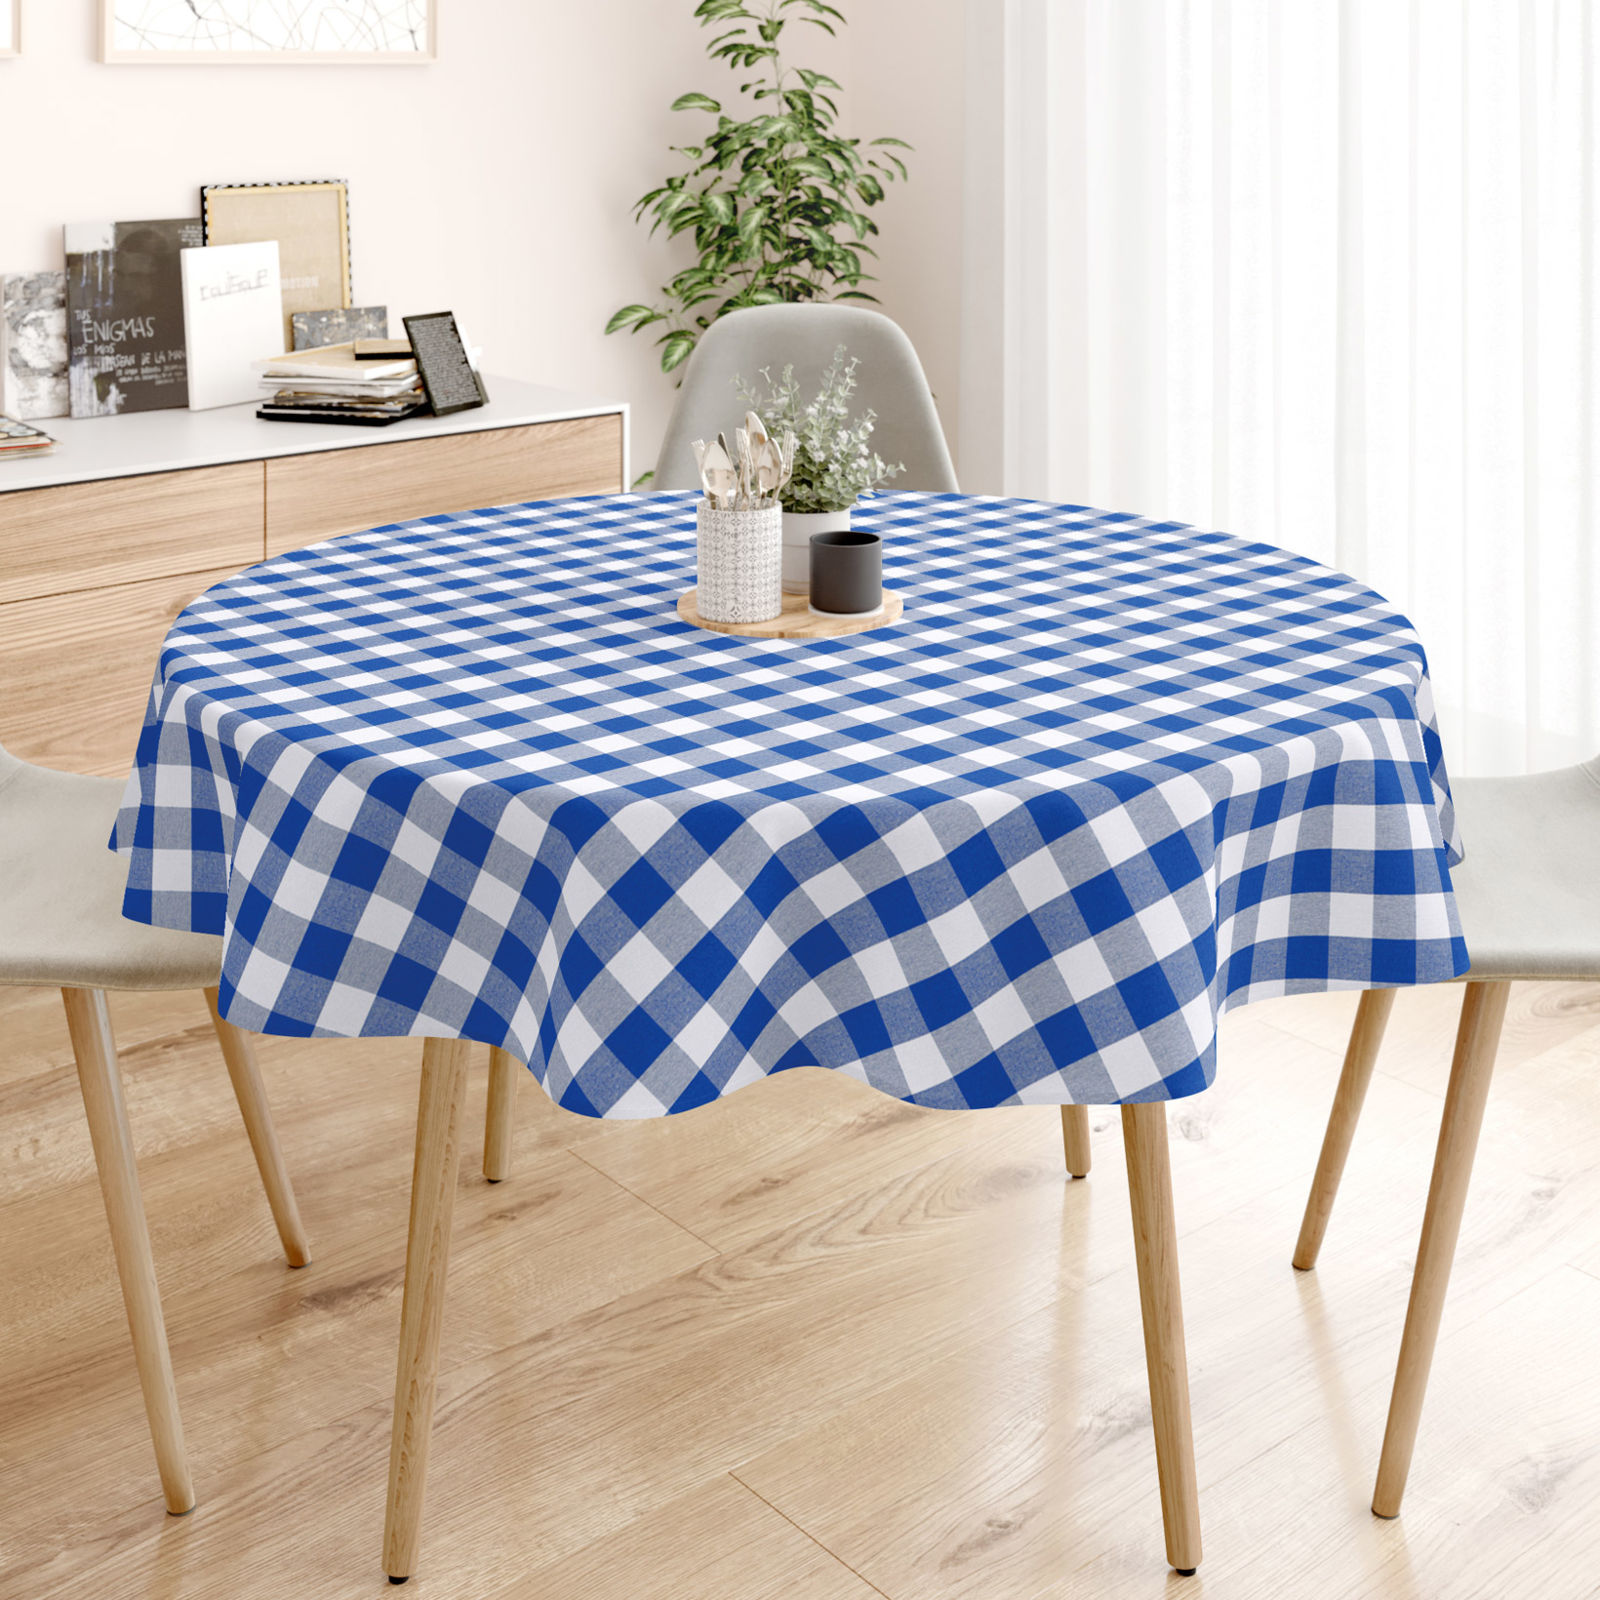 Față de masă decorativă MENORCA - carouri mari albastre și albe  - rotundă